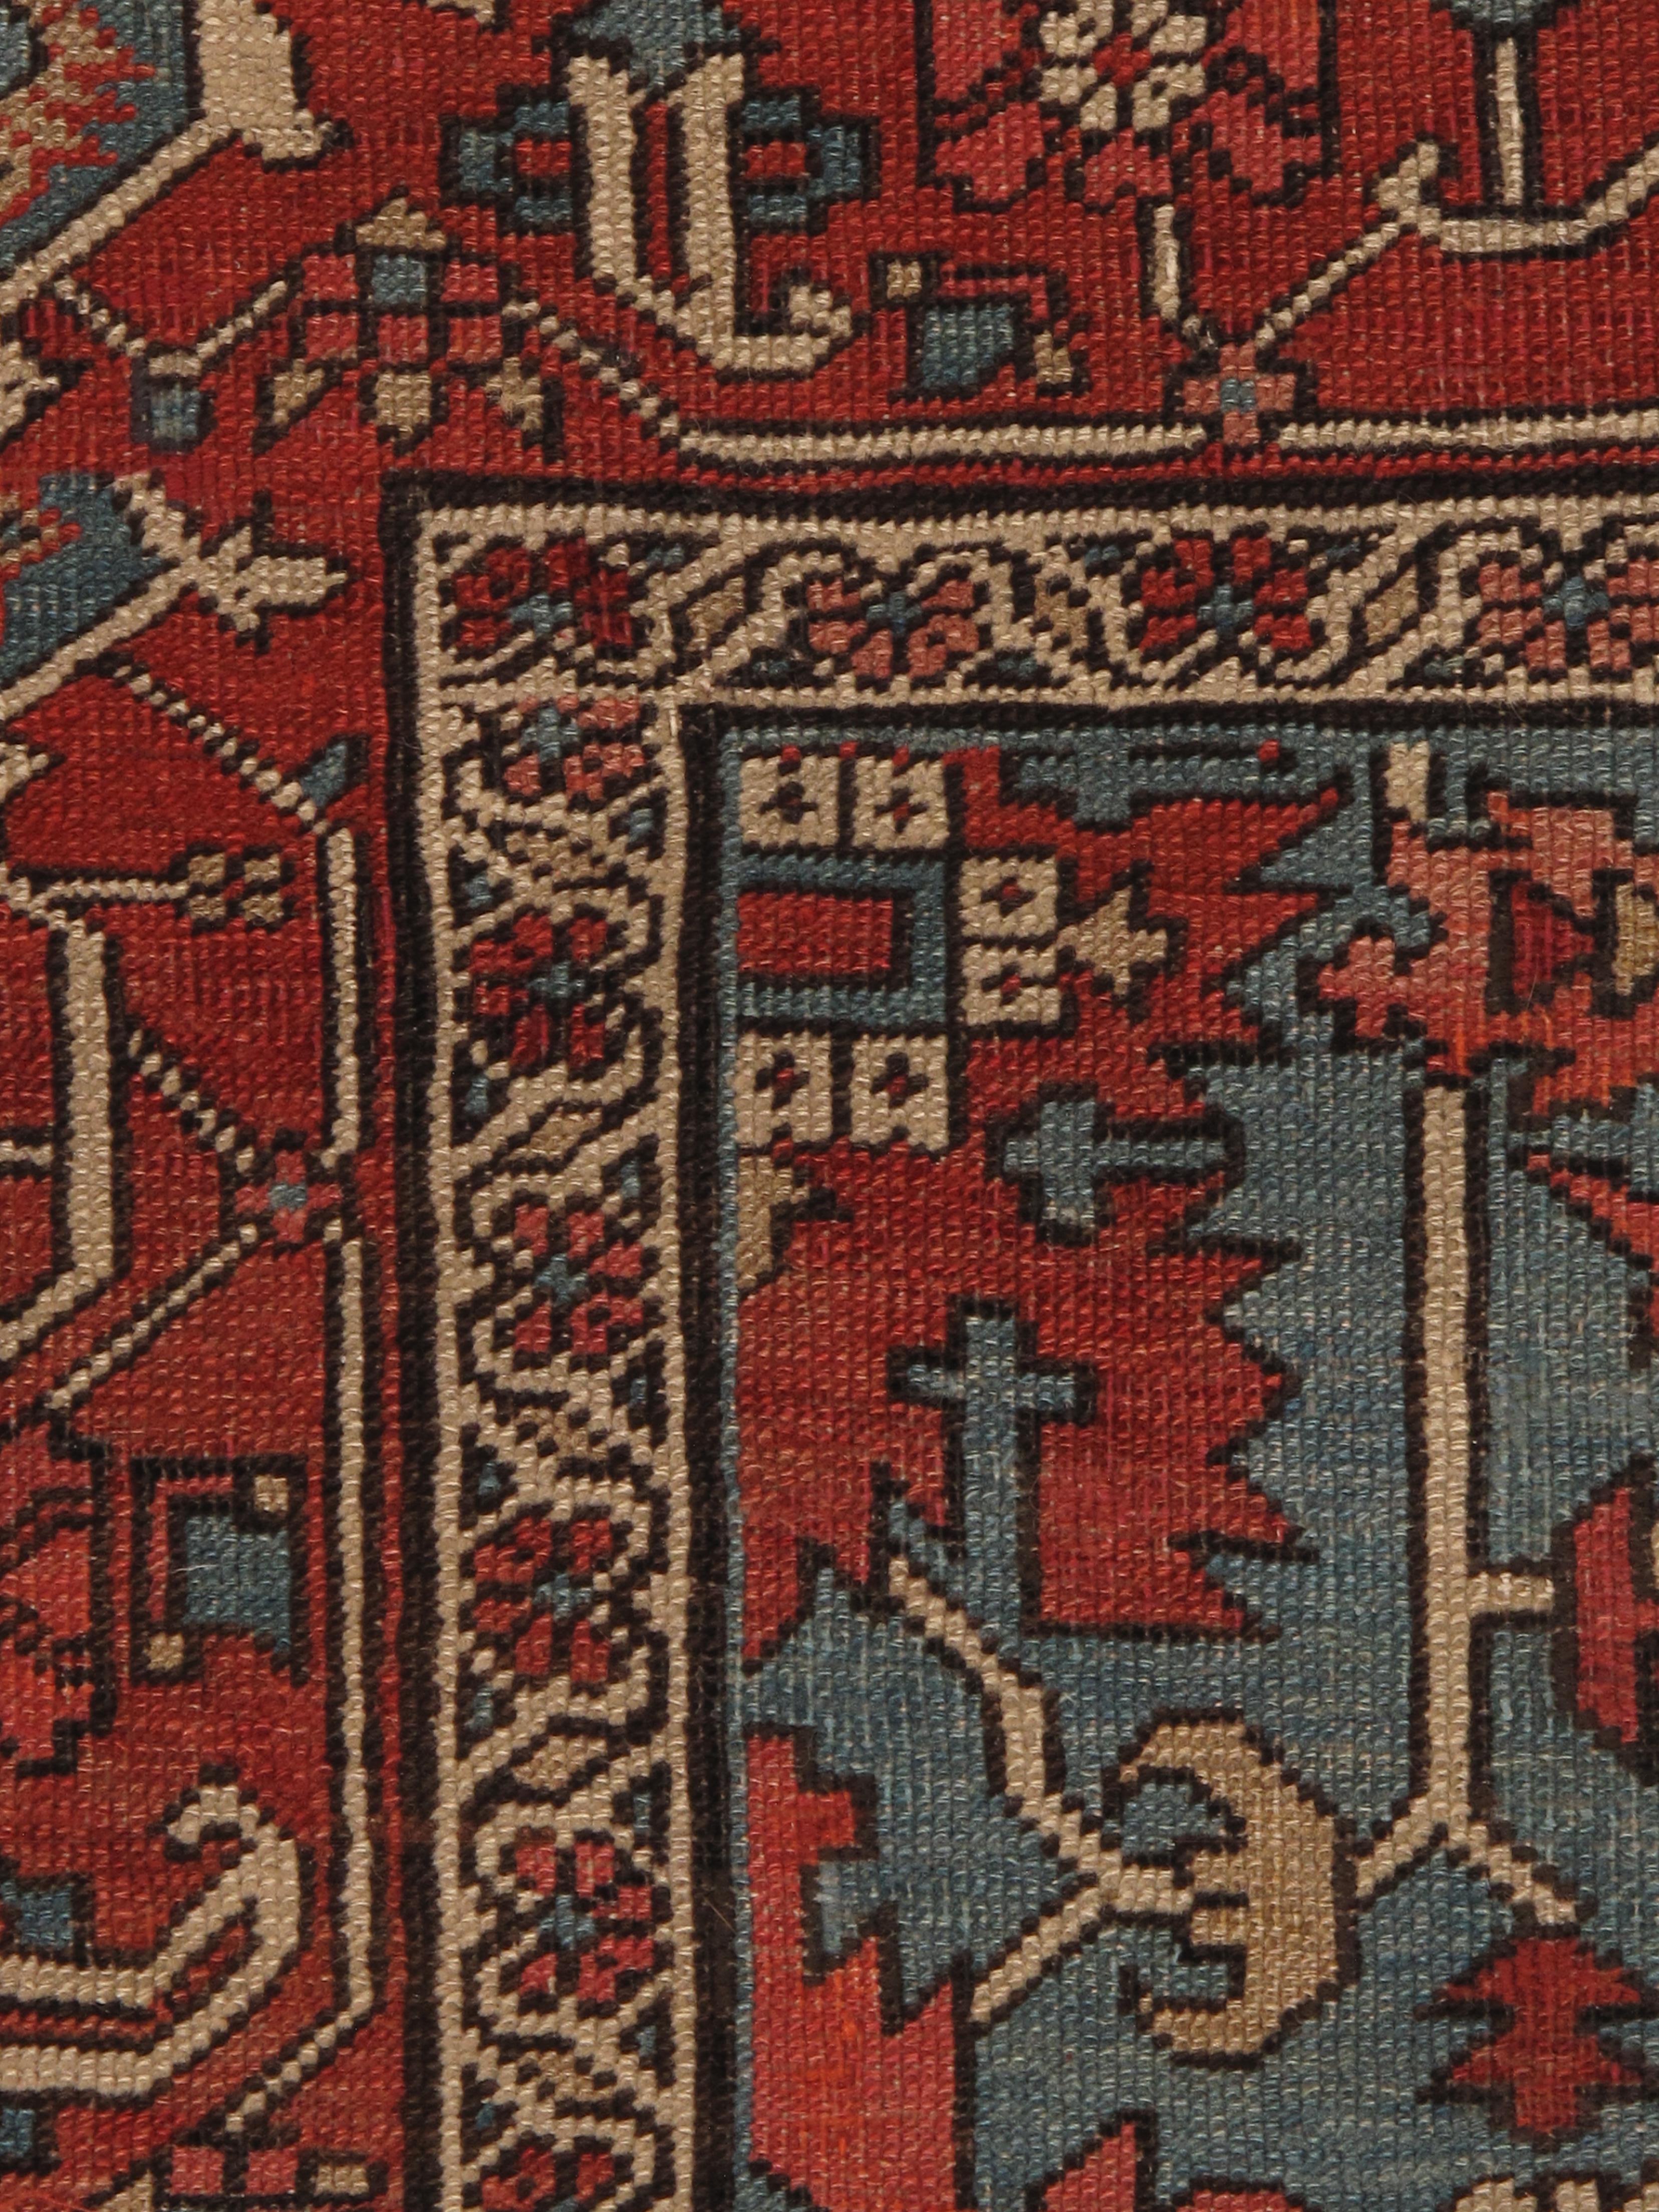 Les tapis Serapi de la fin du XIXe siècle et du début du XXe siècle représentent l'apogée de l'art du tissage des tapis persans. Originaires du village de Serab, dans la région de Heriz, au nord-ouest de la Perse (aujourd'hui l'Iran), ces tapis sont